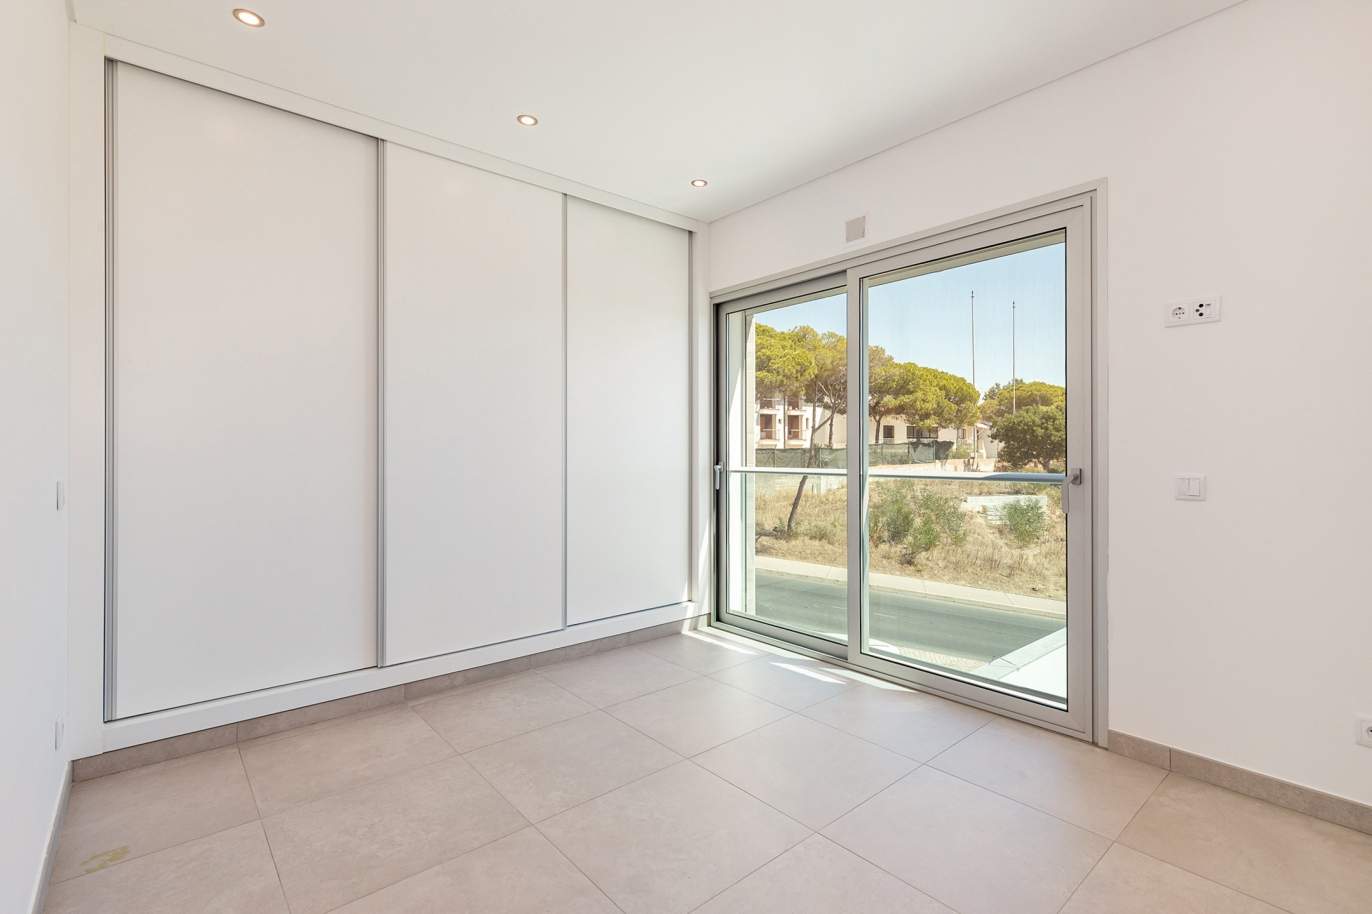 Moderno apartamento de 2 dormitorios, con vista al mar, Albufeira, Algarve_178611